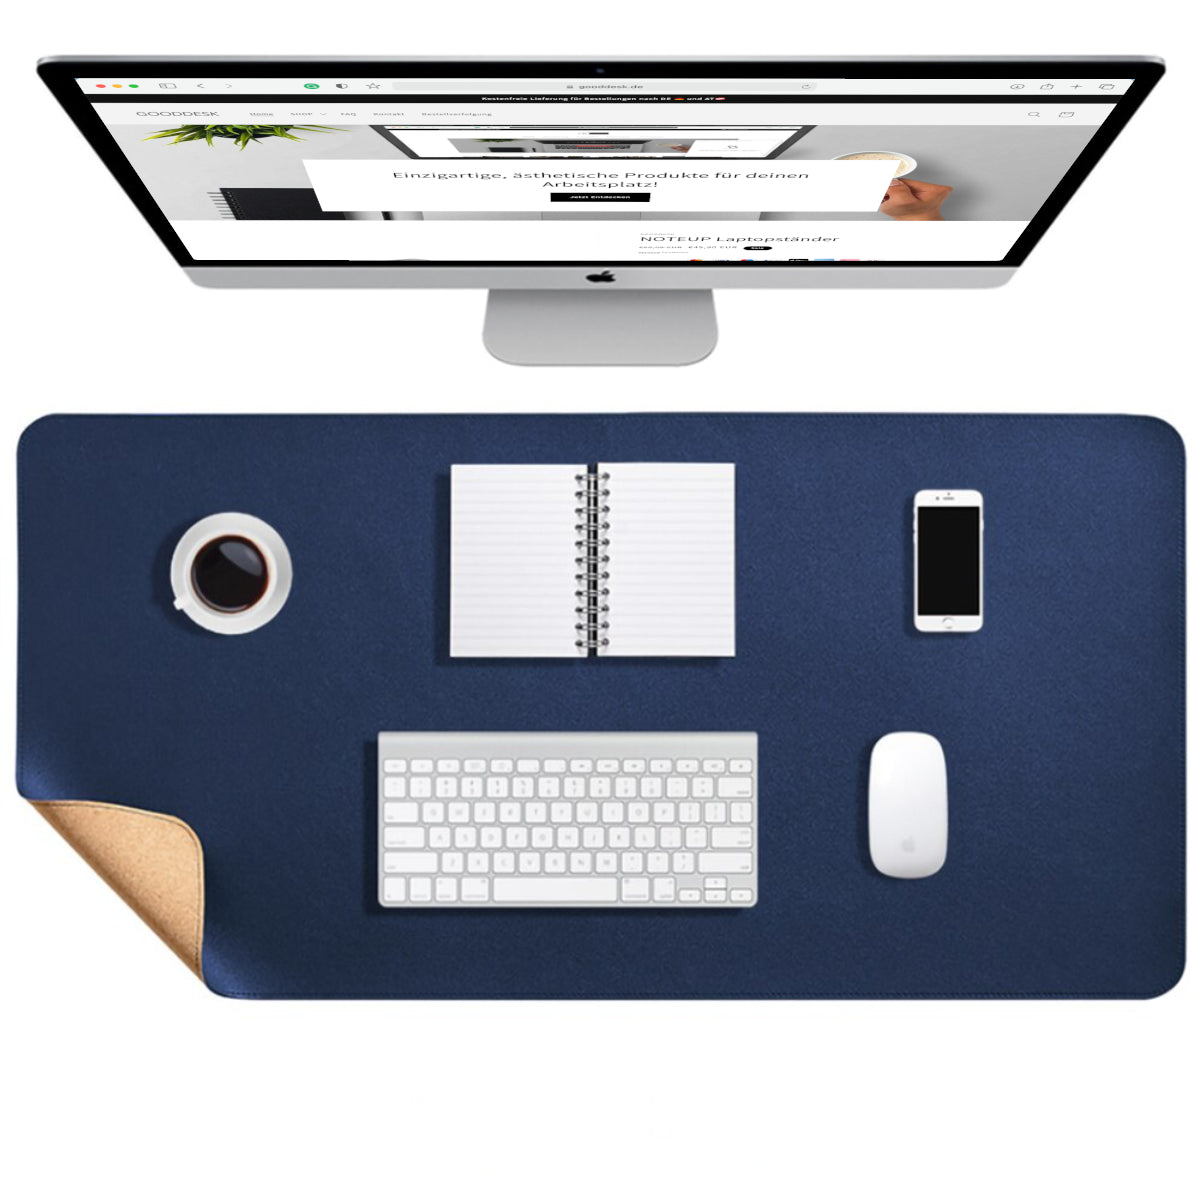 Korkmatte Kork Schreibtischunterlage nachhaltig Eingangsbild shoppen gooddesk blau Wählbild